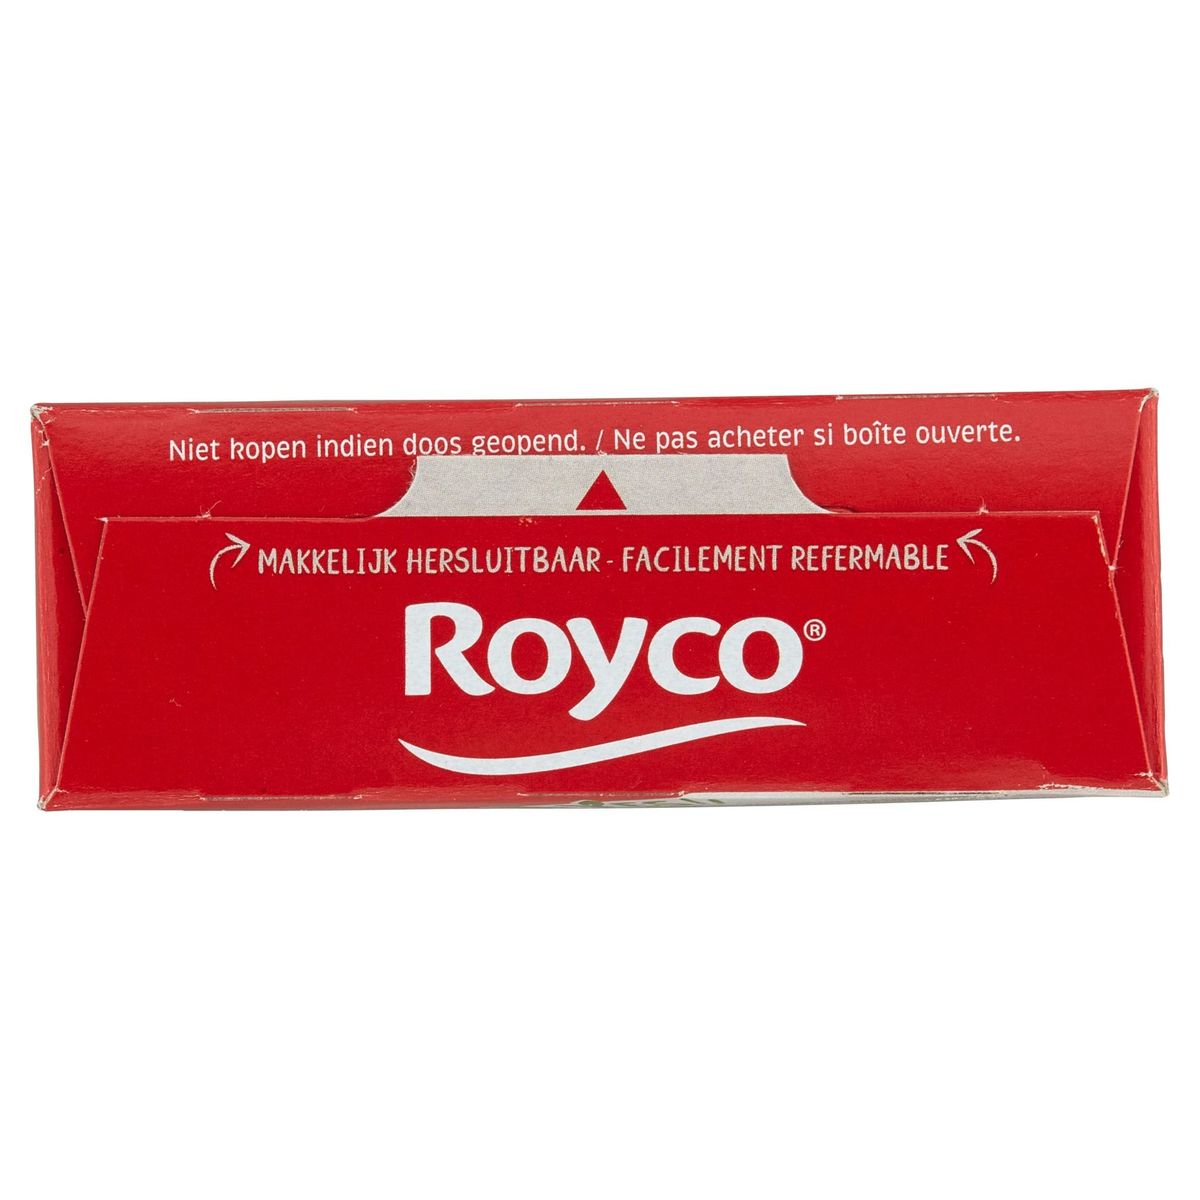 Royco Potiron 3 x 16.6 g